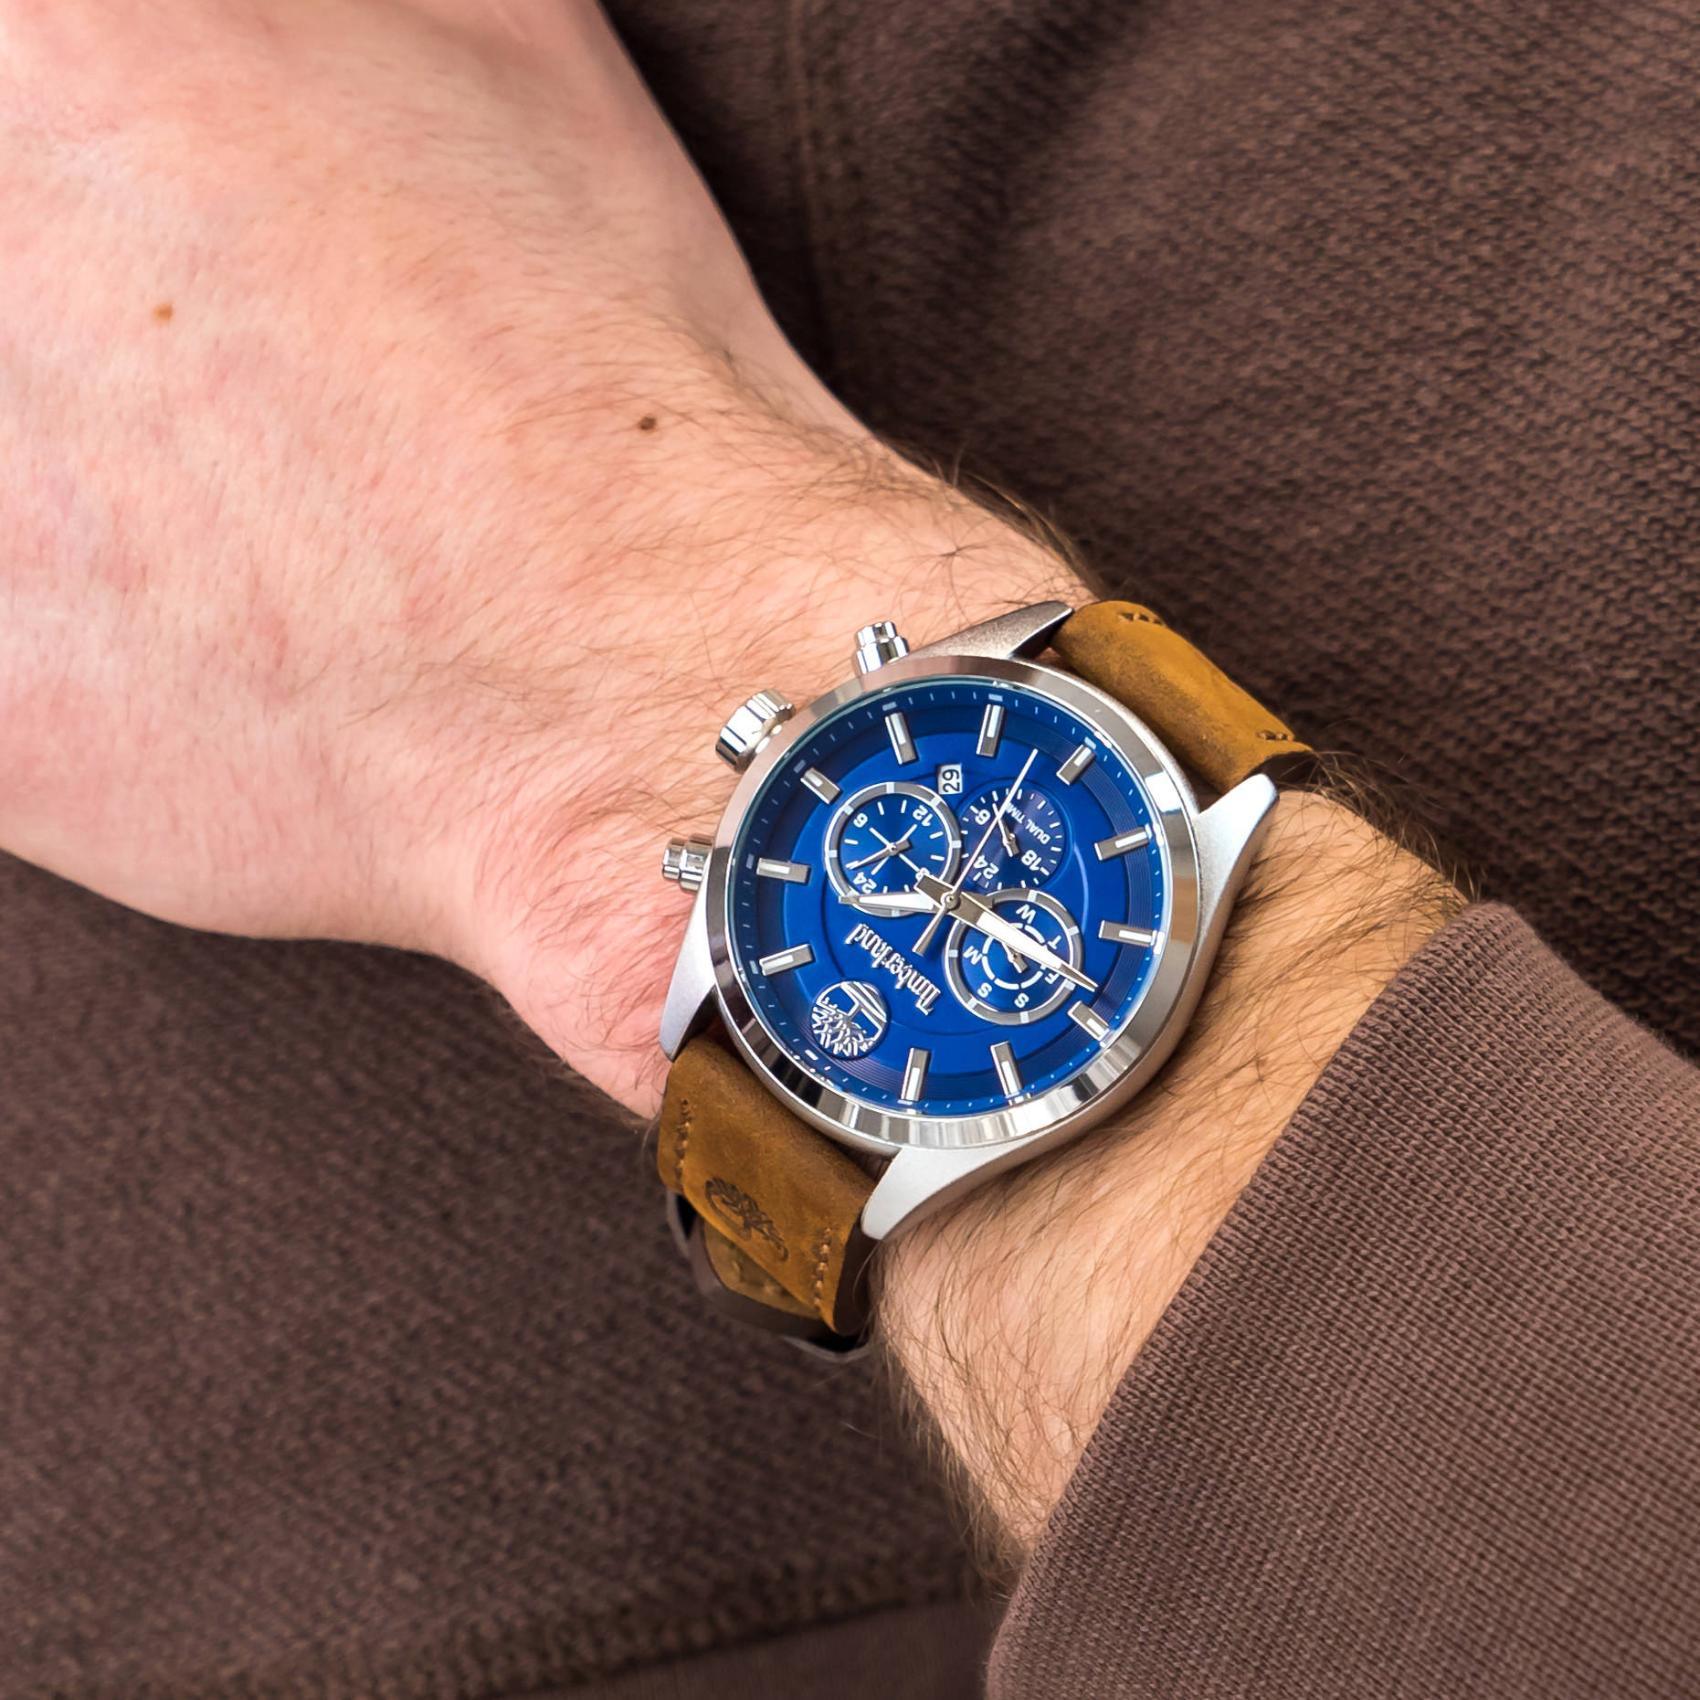 Αντρικό ρολόι Timberland Ashmont TBL16062JYS/03 χρονογράφος με καφέ δερμάτινο λουράκι και μπλε καντράν διαμέτρου 46mm με ημέρα-ημερομηνία.